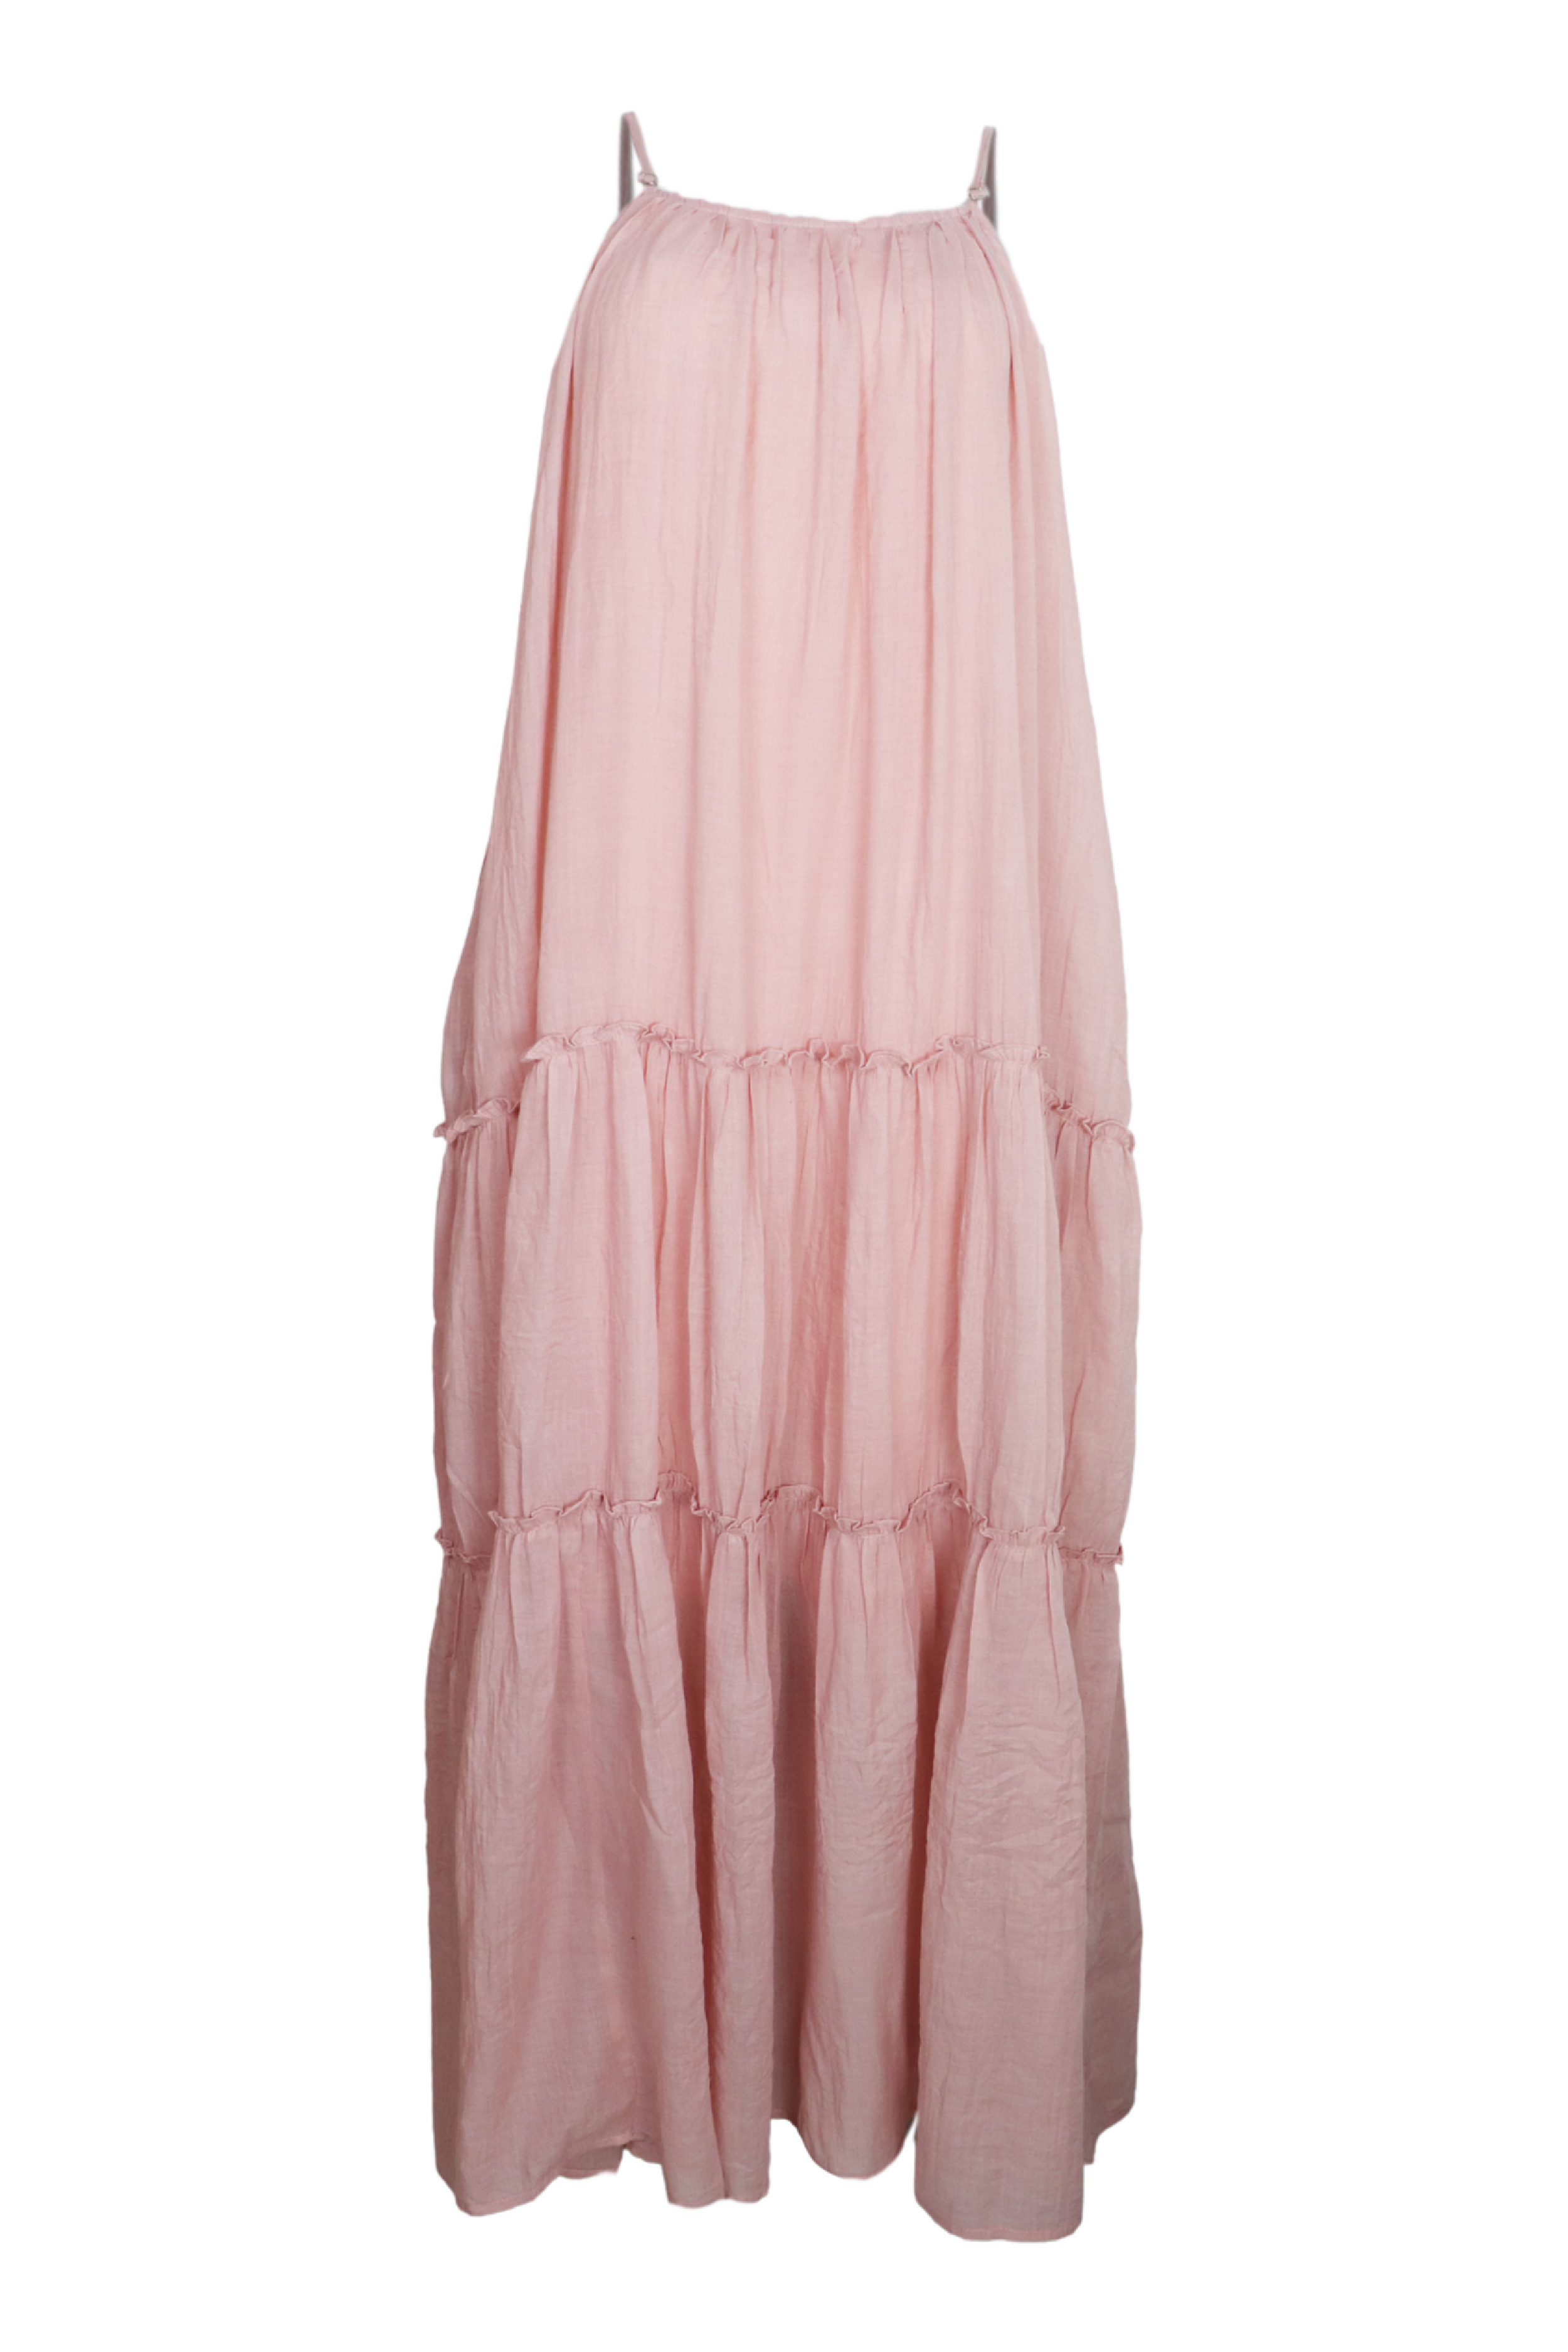 Hermoso vestito largo de tiras en hombros color palo de rosa